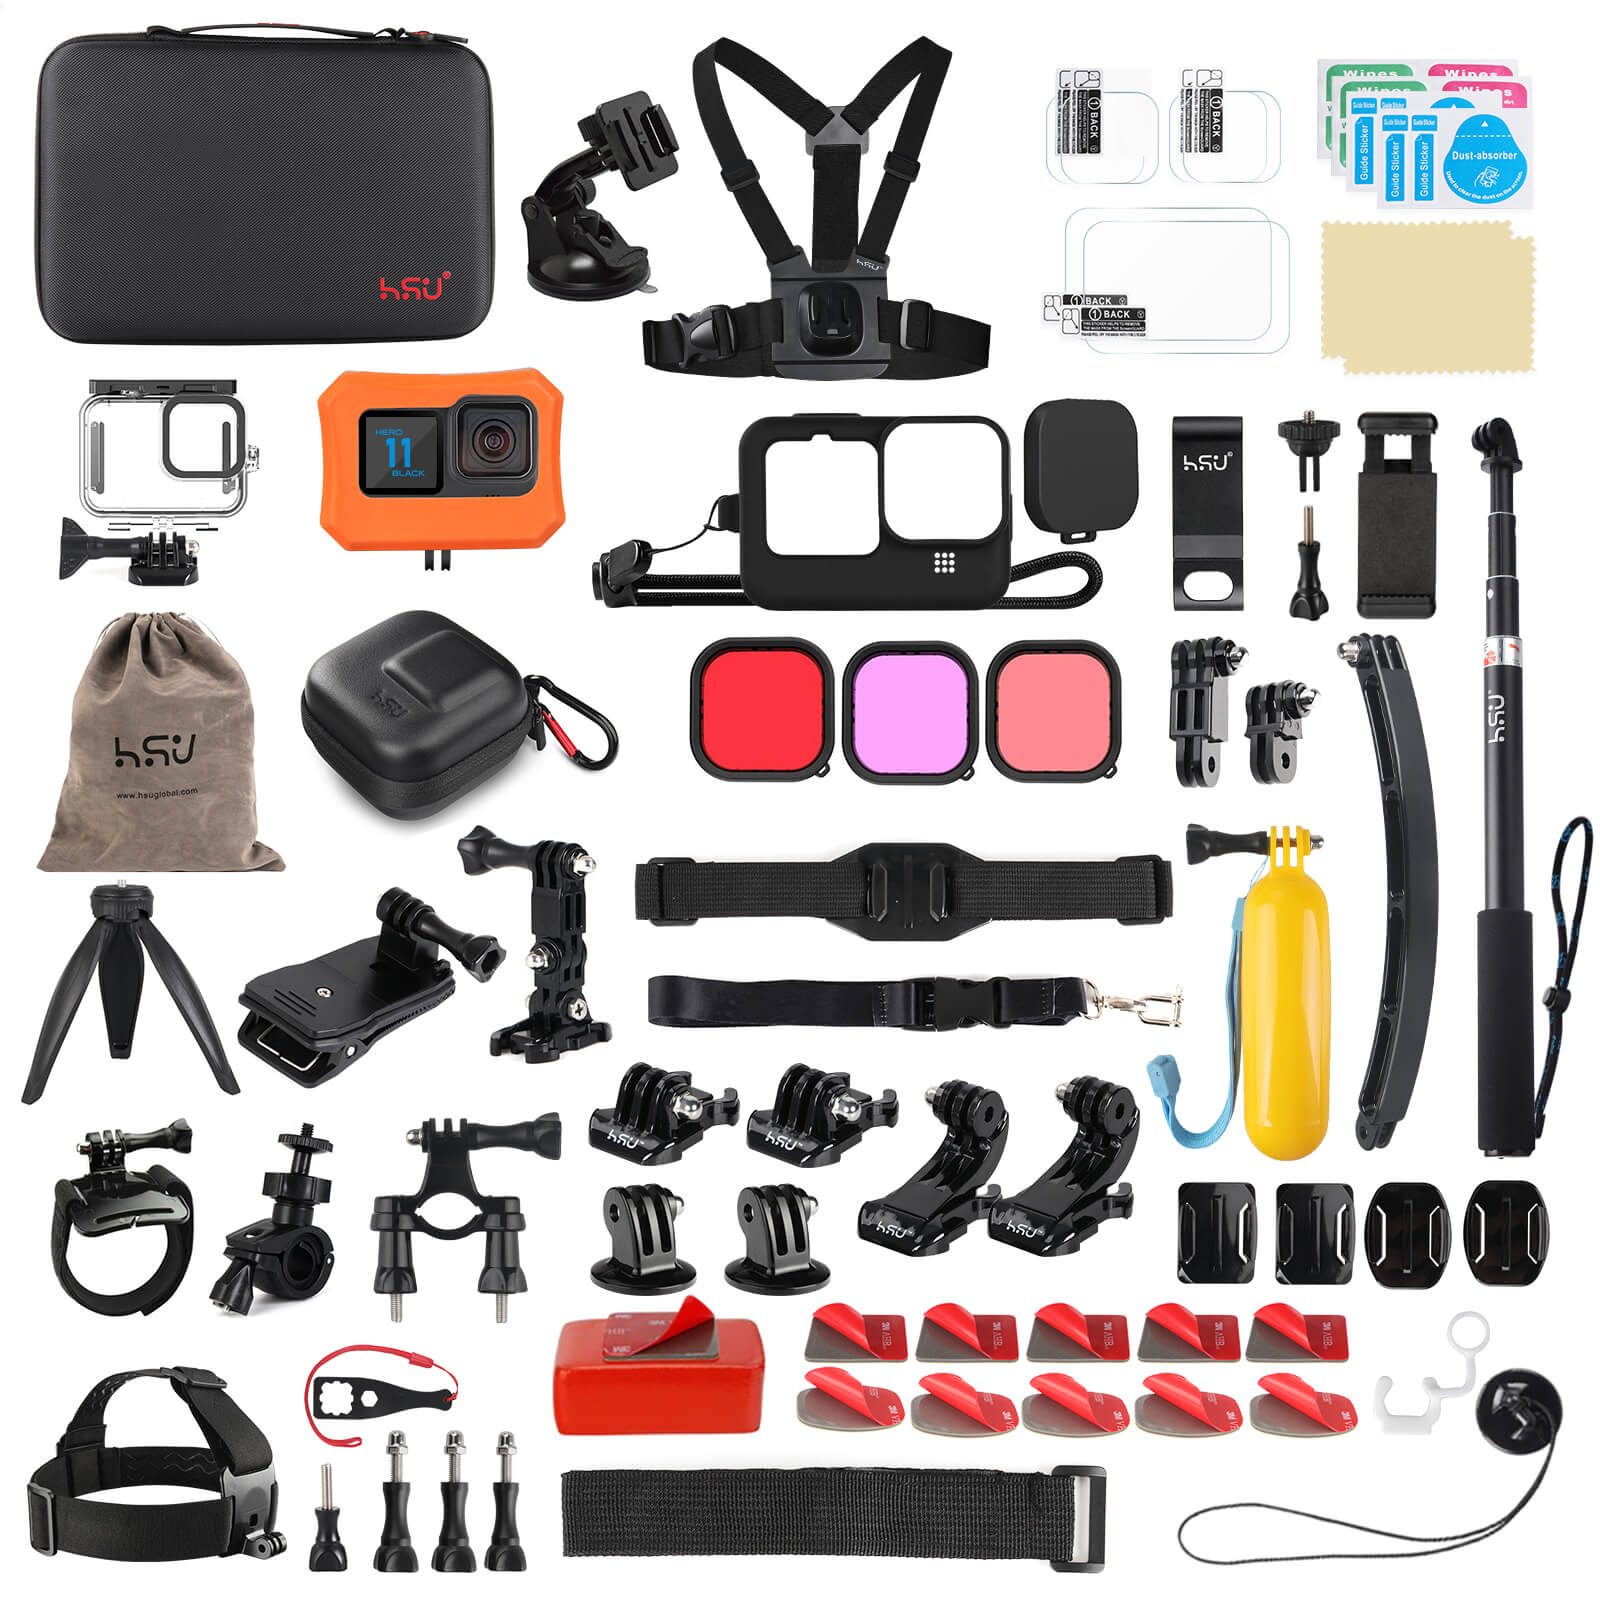 HSU  in 1 GoPro Accessory Kit for GoPro Hero  Black